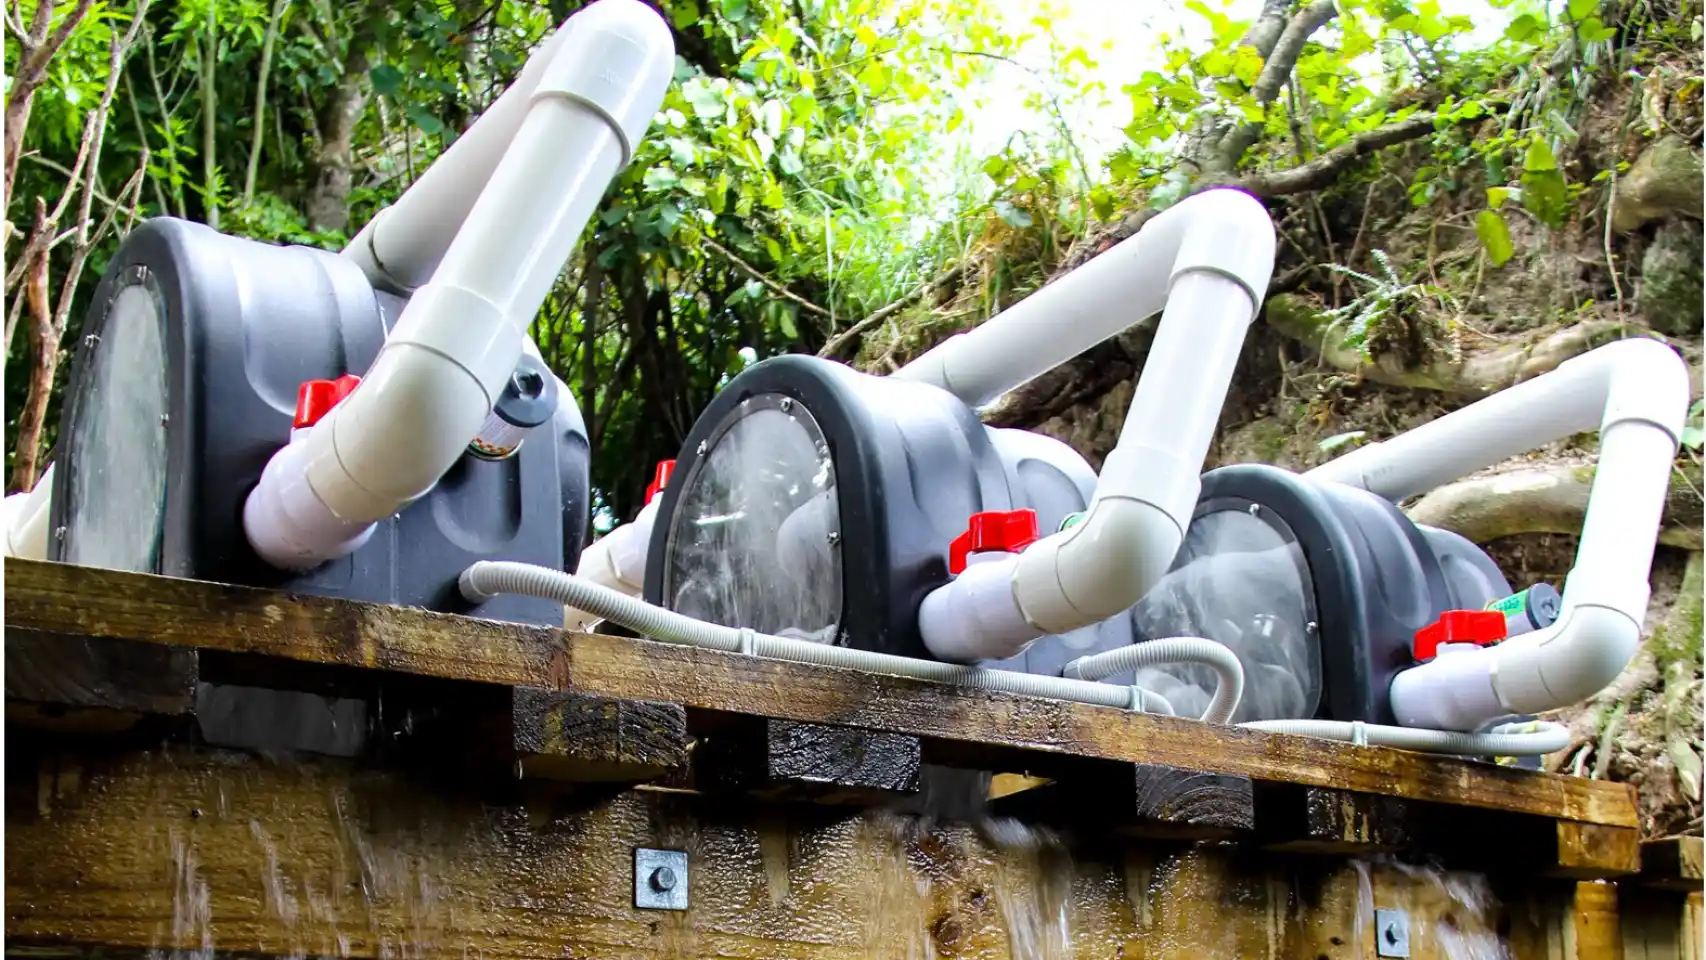 La pequeña turbina inteligente que transforma la corriente de ríos y arroyos en energía limpia.